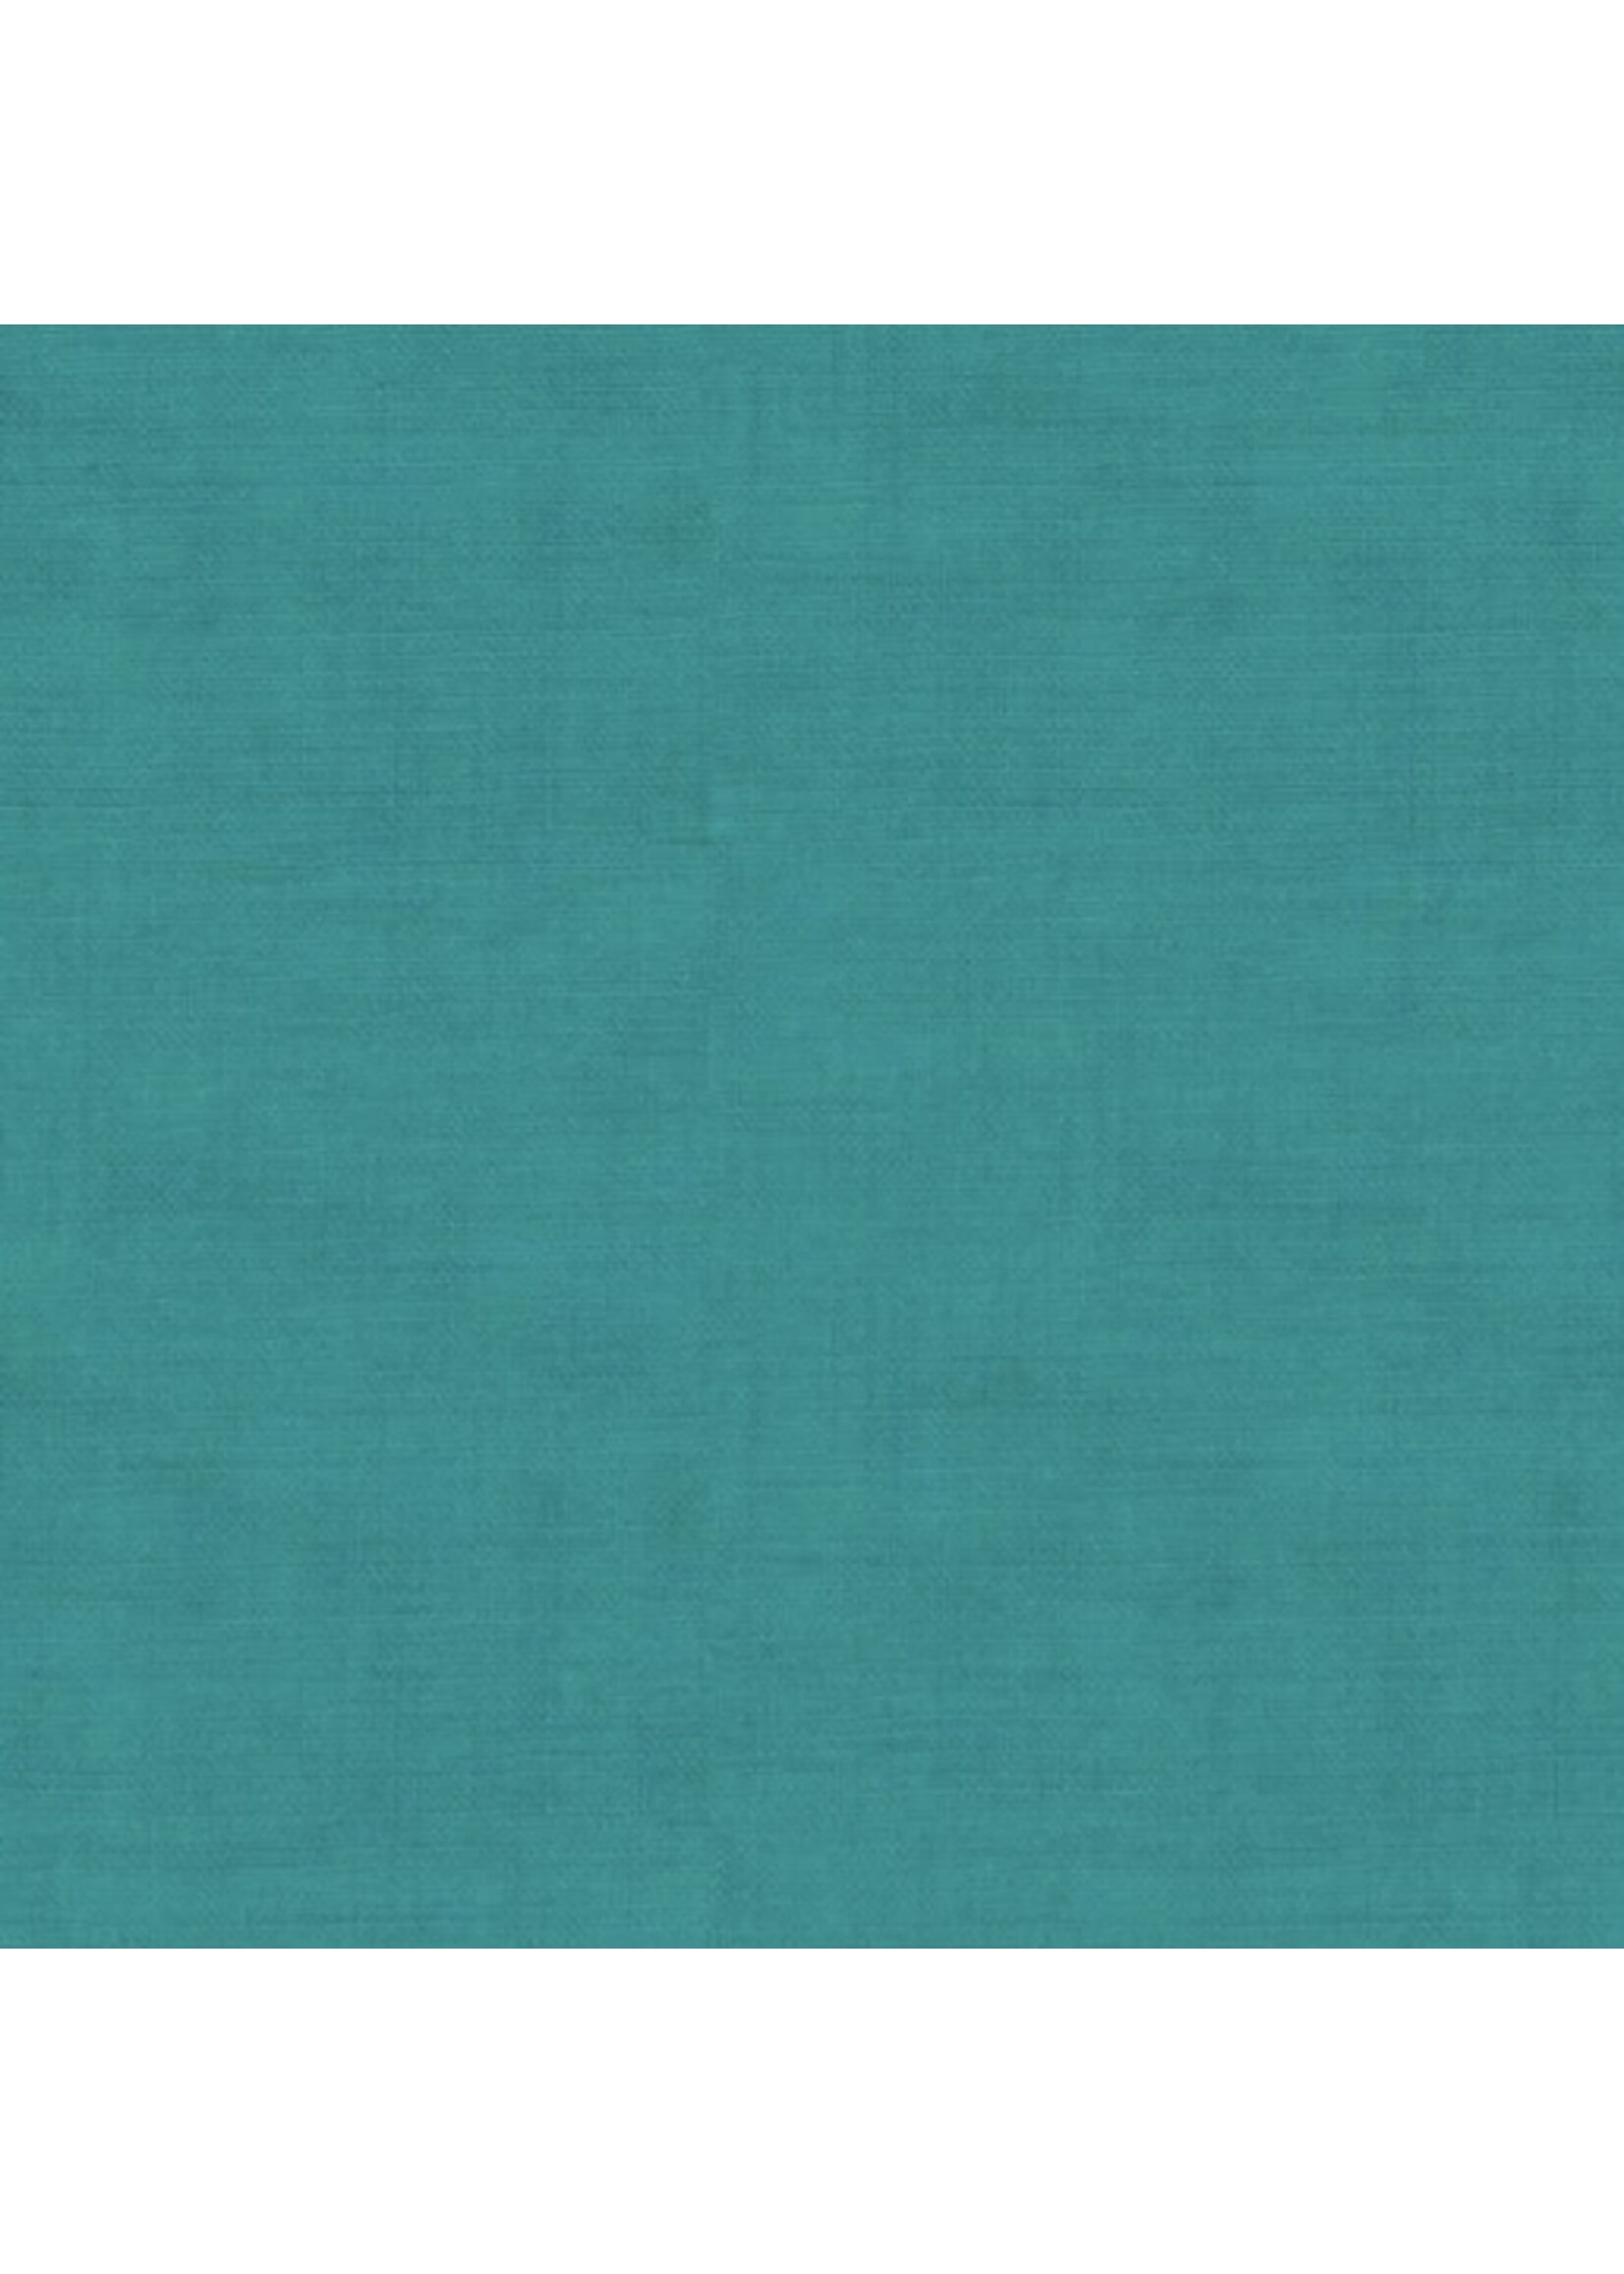 Makower Linen Texture - Turquoise - 1473T5